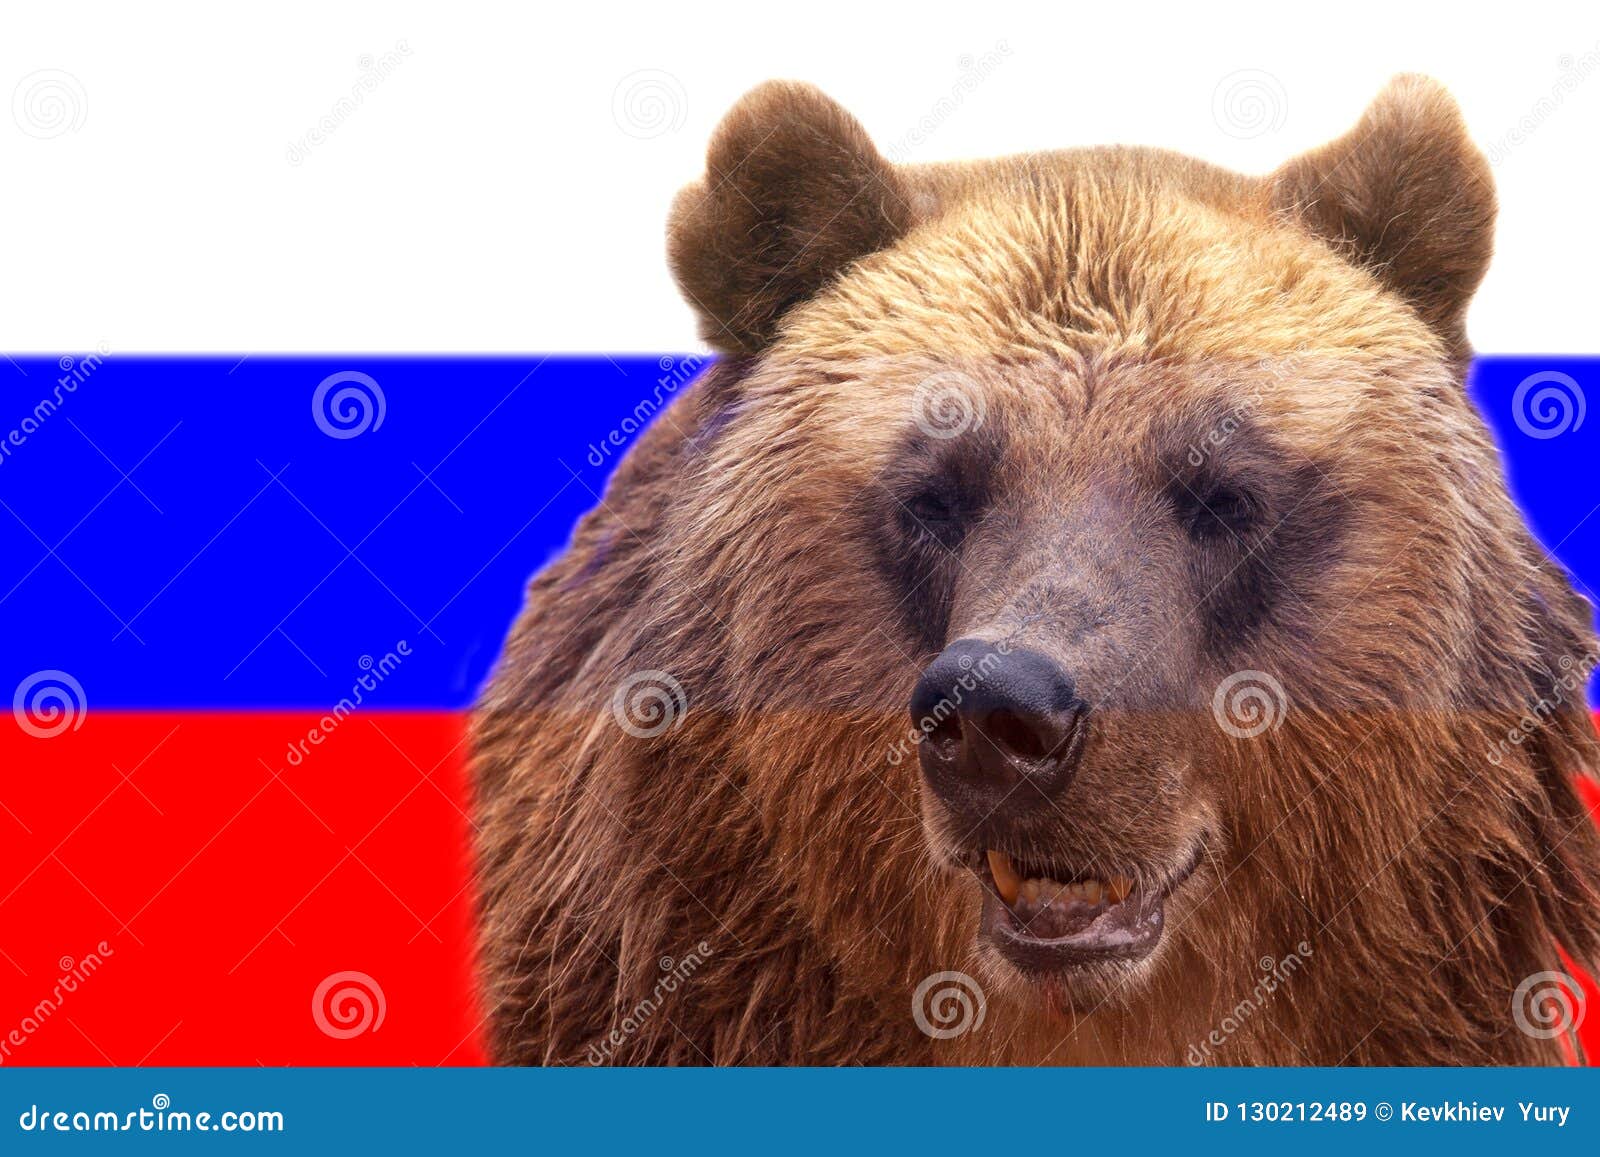 Неофициальный символ россии медведь. Медведь Россия. Медведь символ России. Флаг России с медведем. Медведь с флагом.